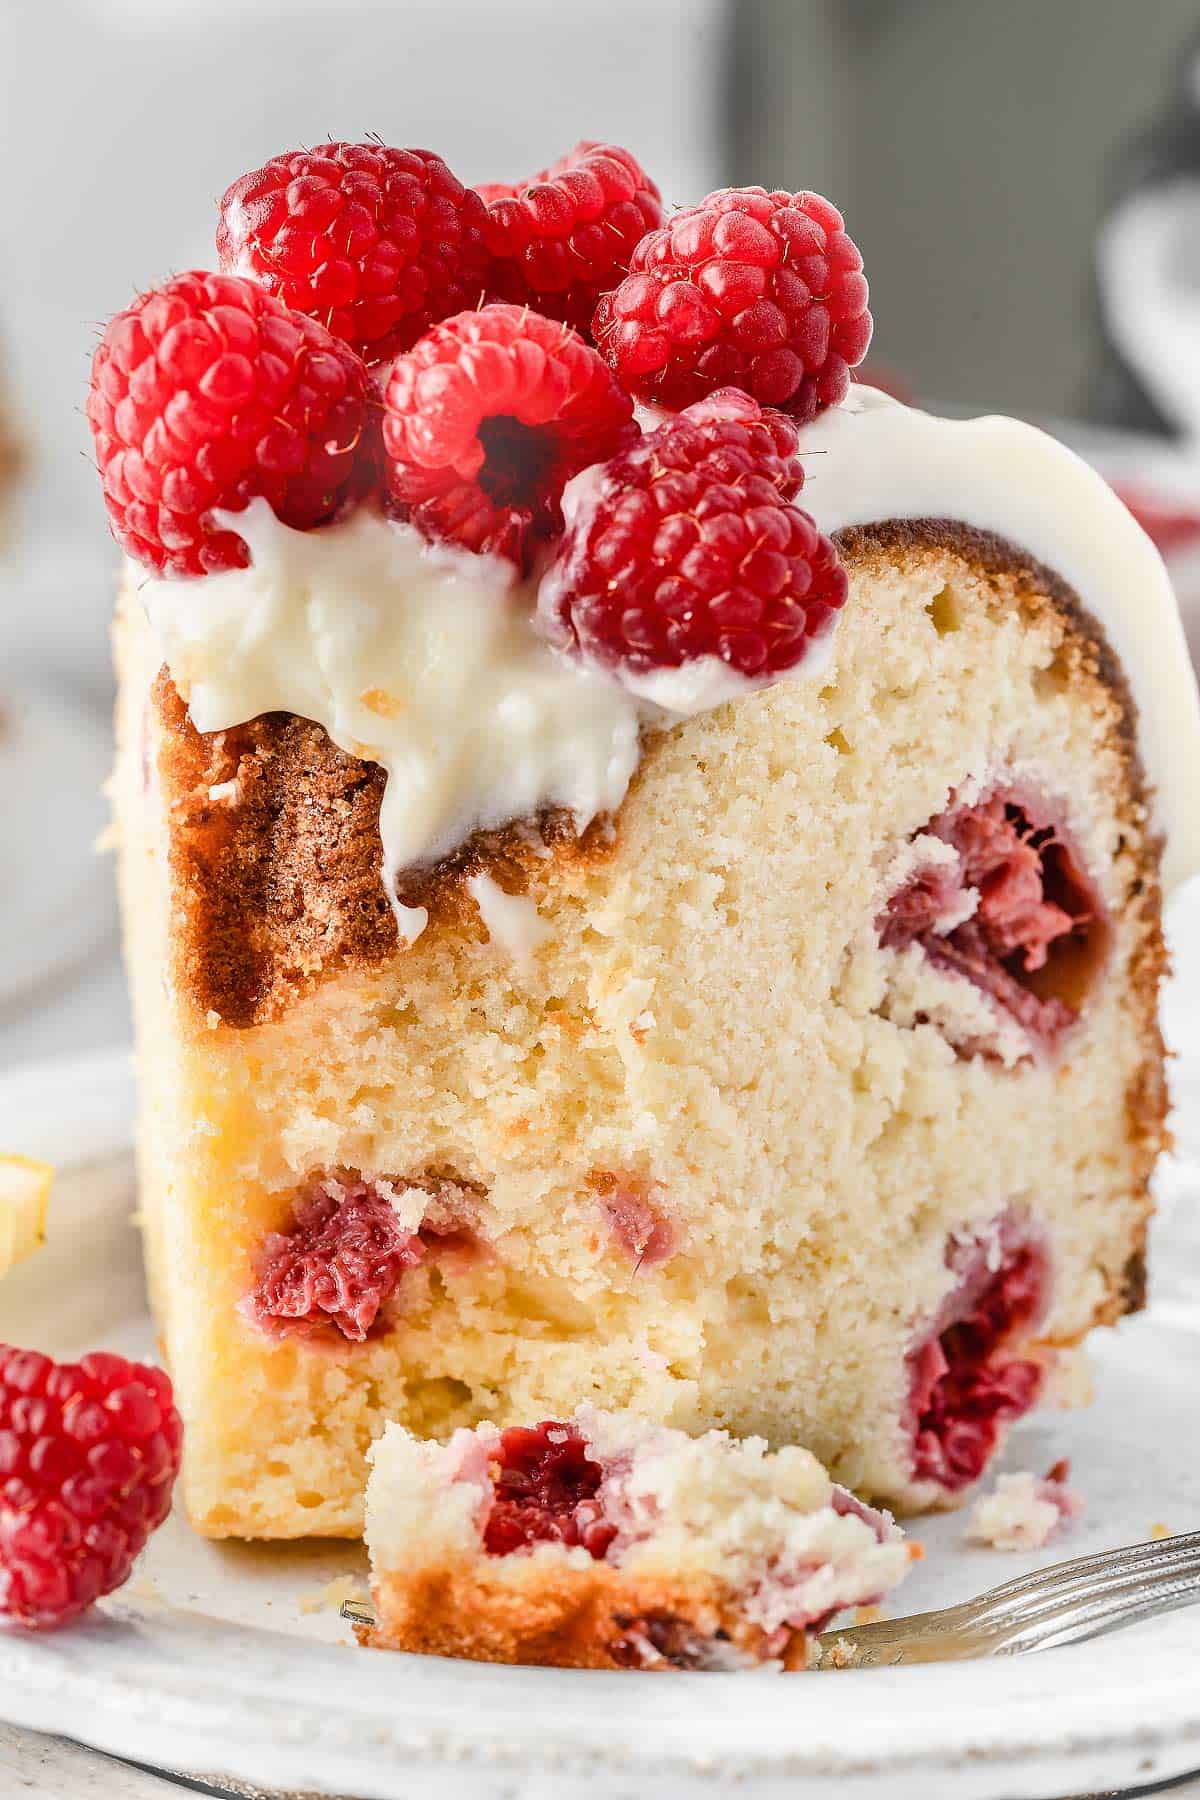 Partially eaten slice of Lemon Raspberry Bundt Cake on a white plate with fresh raspberries and lemon slices on top.